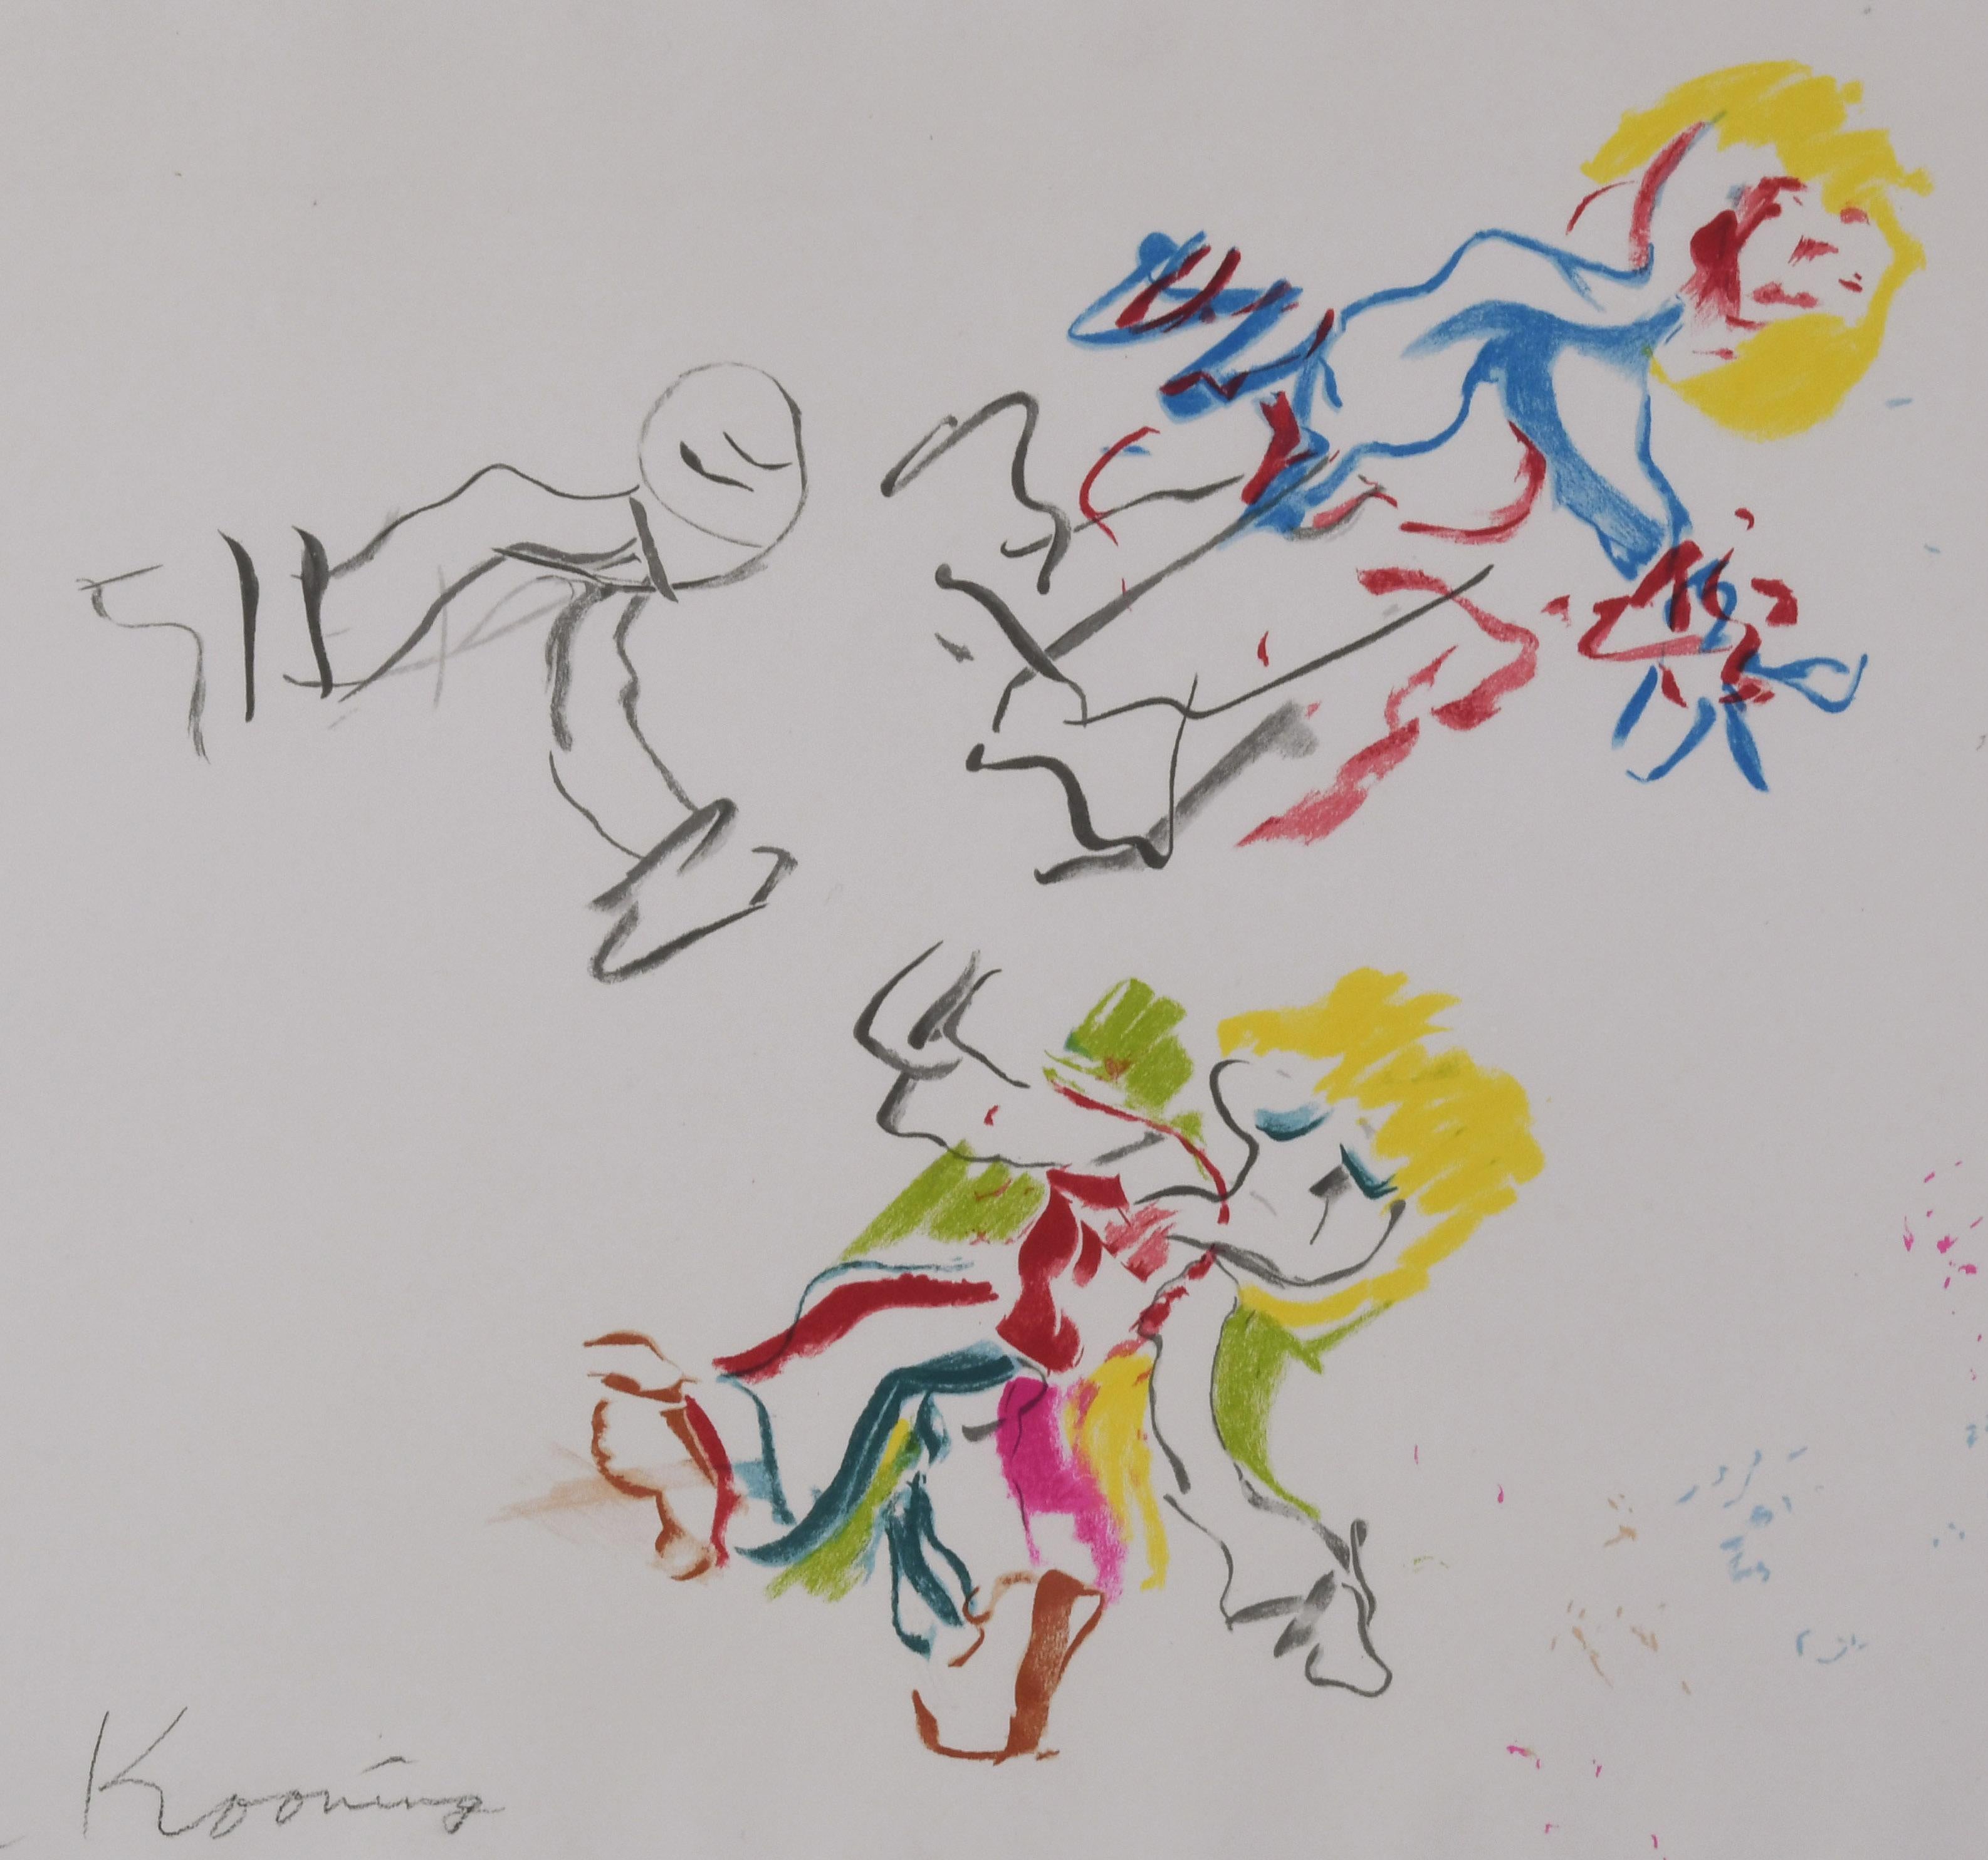 Für Lisa
Farblithographie, 1984
Signiert mit Bleistift unten links (siehe Foto)
Nummerierte untere rechte Ecke
Veröffentlicht zu Gunsten des Los Angeles Children's Museum
Gedruckt von Brand X Editions New York, deren Stempel in der linken unteren